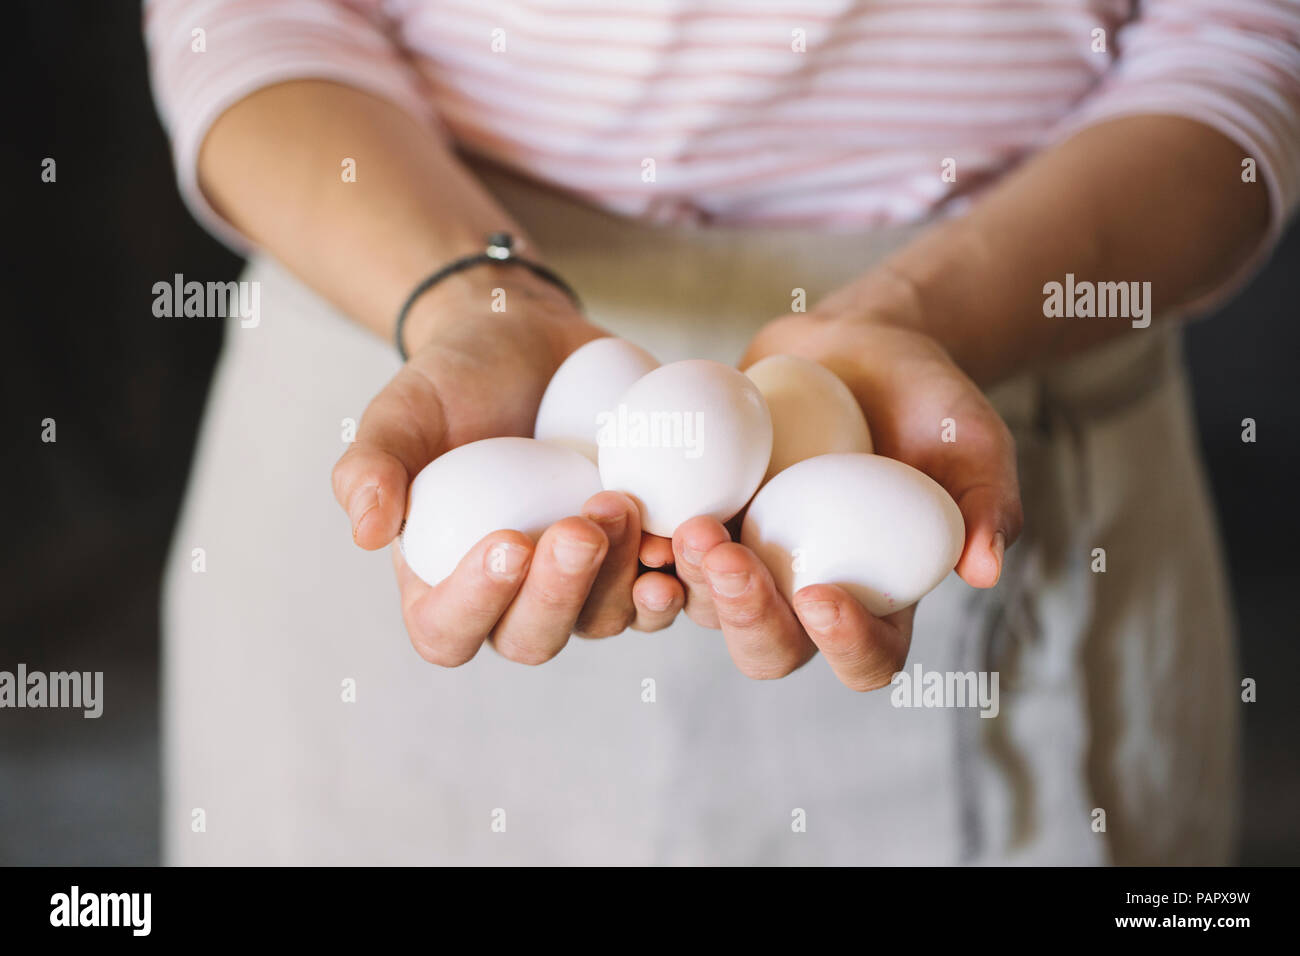 Woman holding raw white eggs Stock Photo